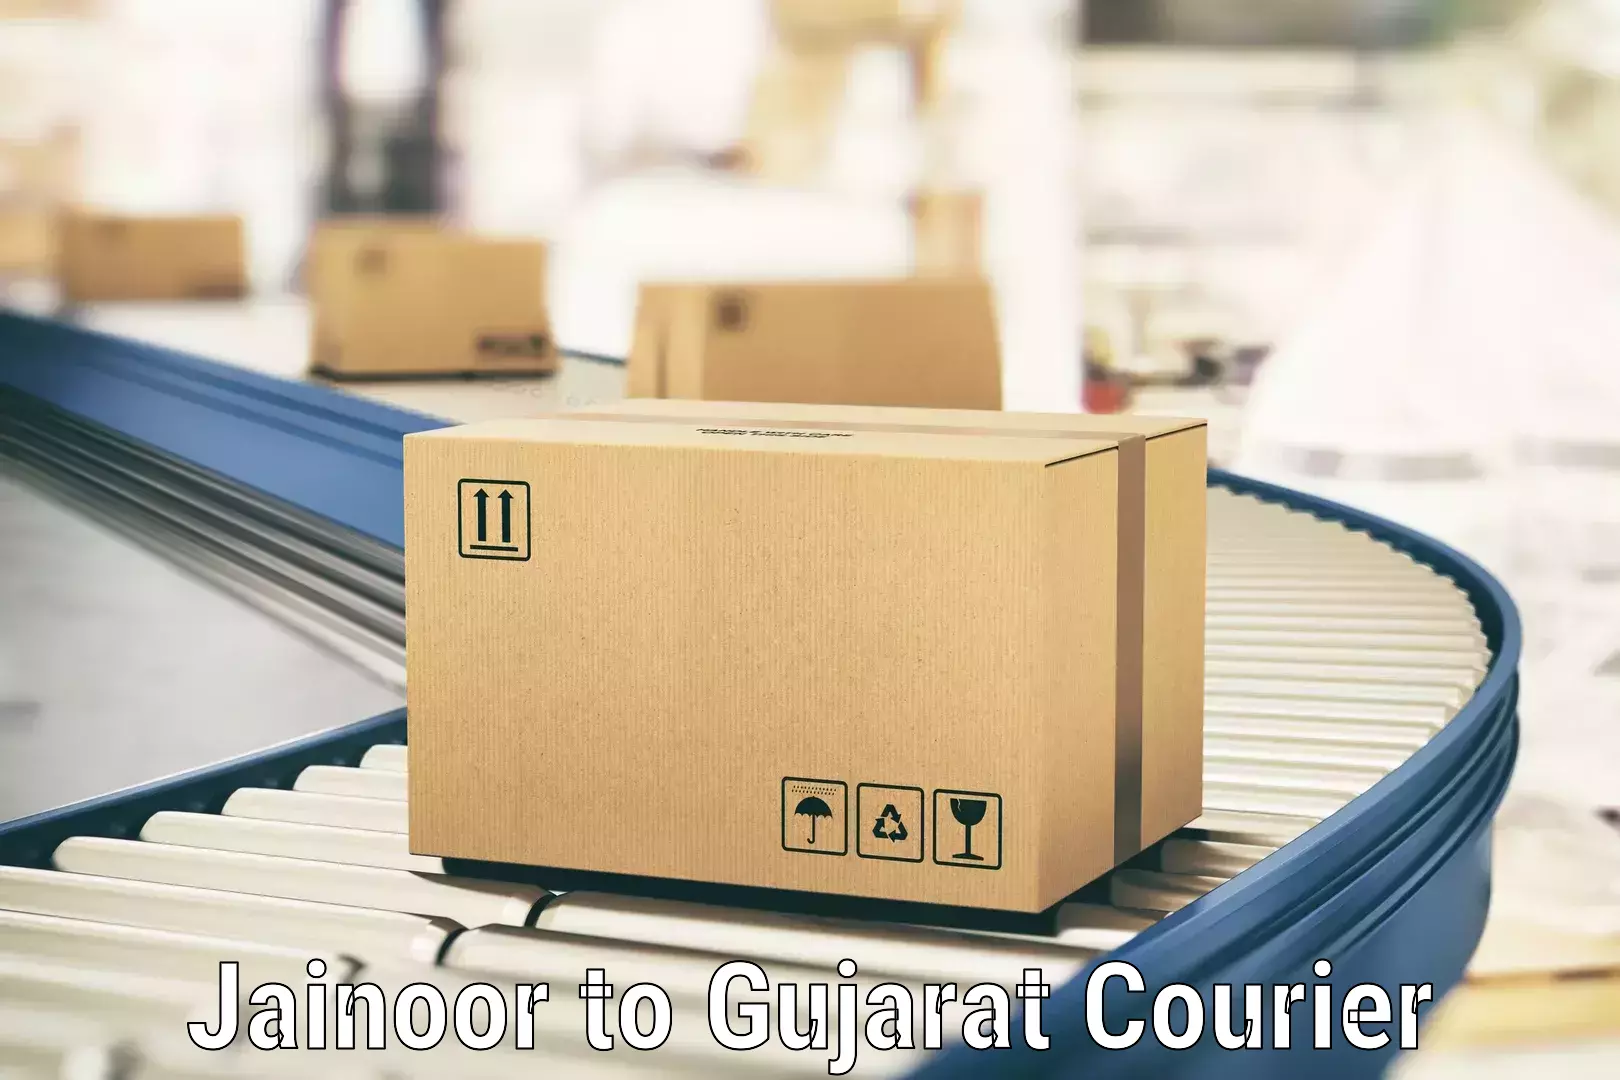 Smart courier technologies Jainoor to Gujarat